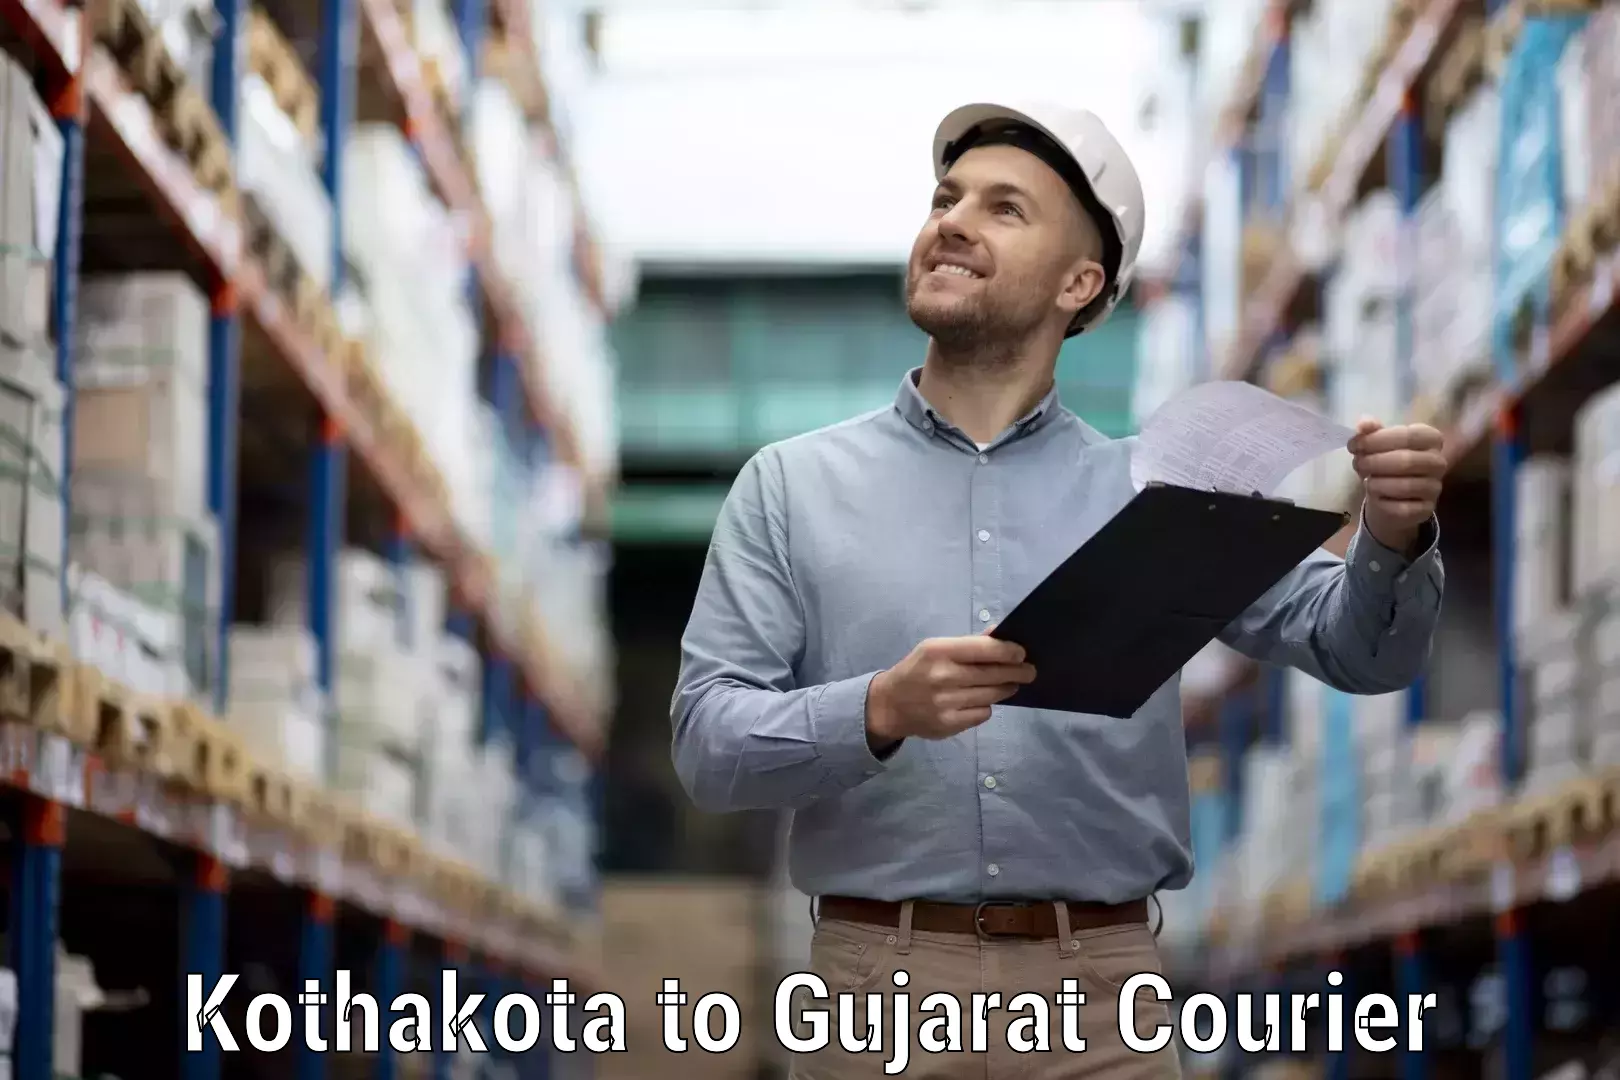 Bulk courier orders Kothakota to IIT Gandhi Nagar